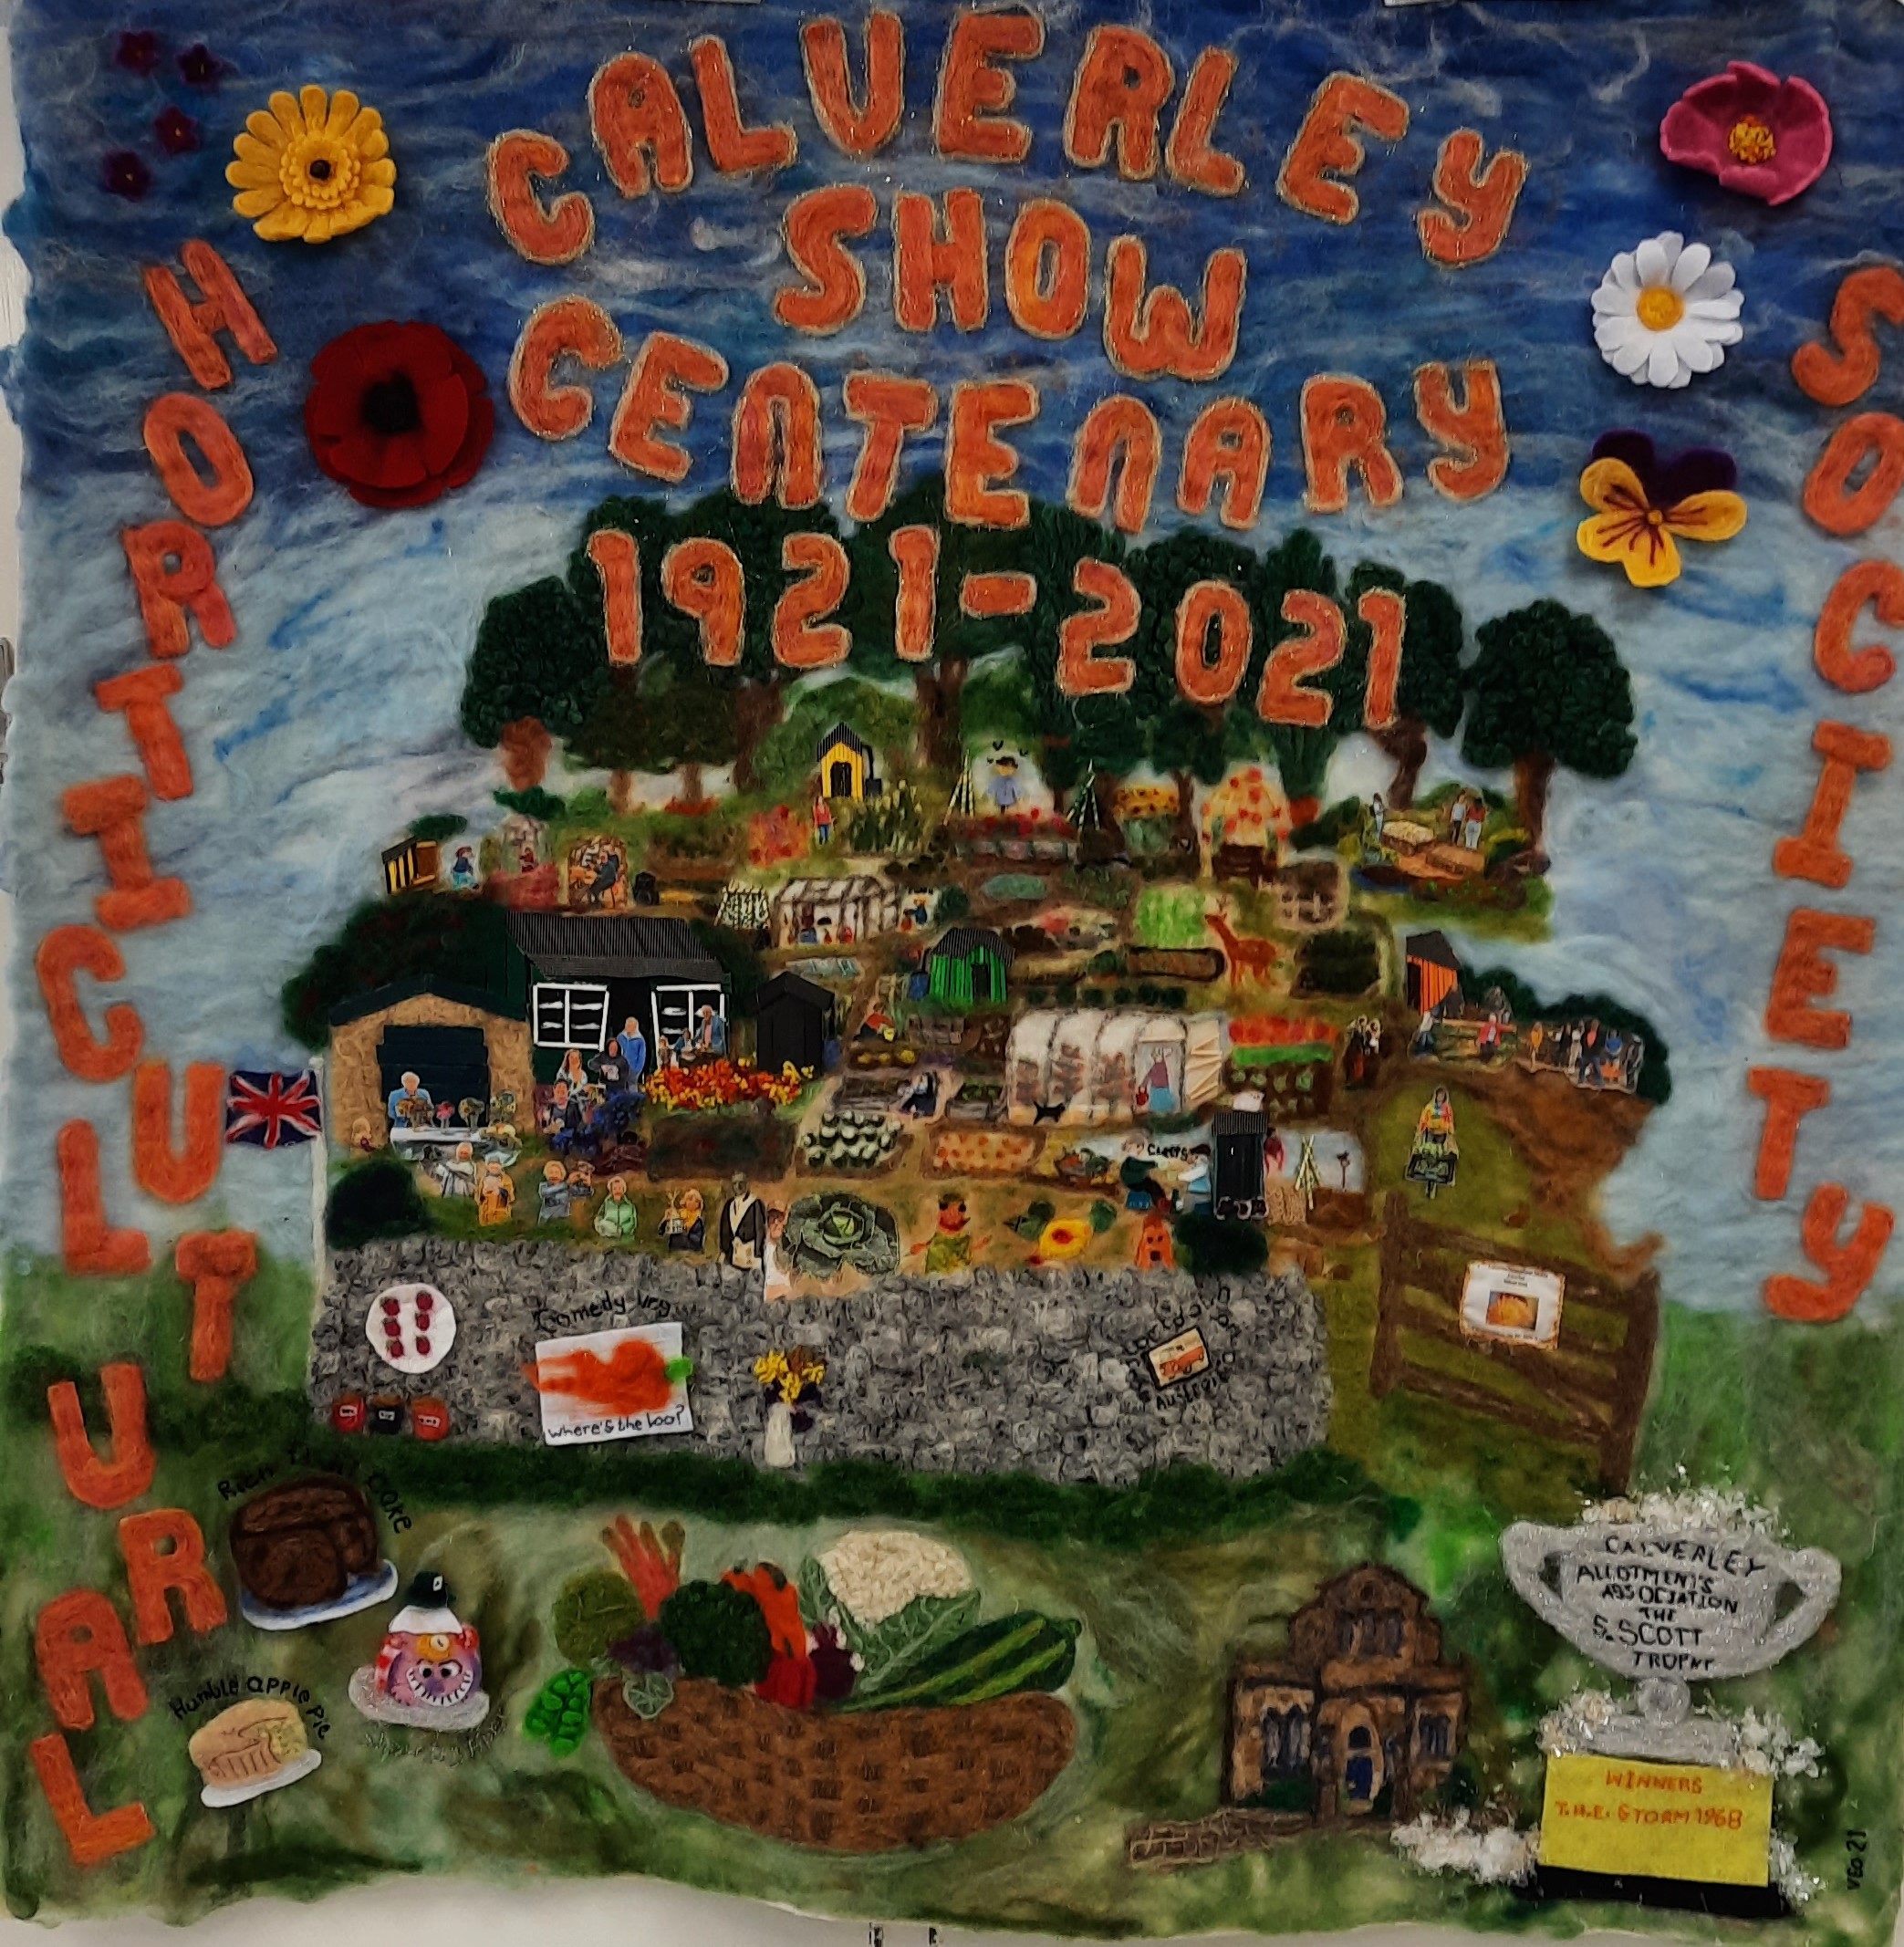 A textile piece celebrating the Calverley Horticultural Society Centenary